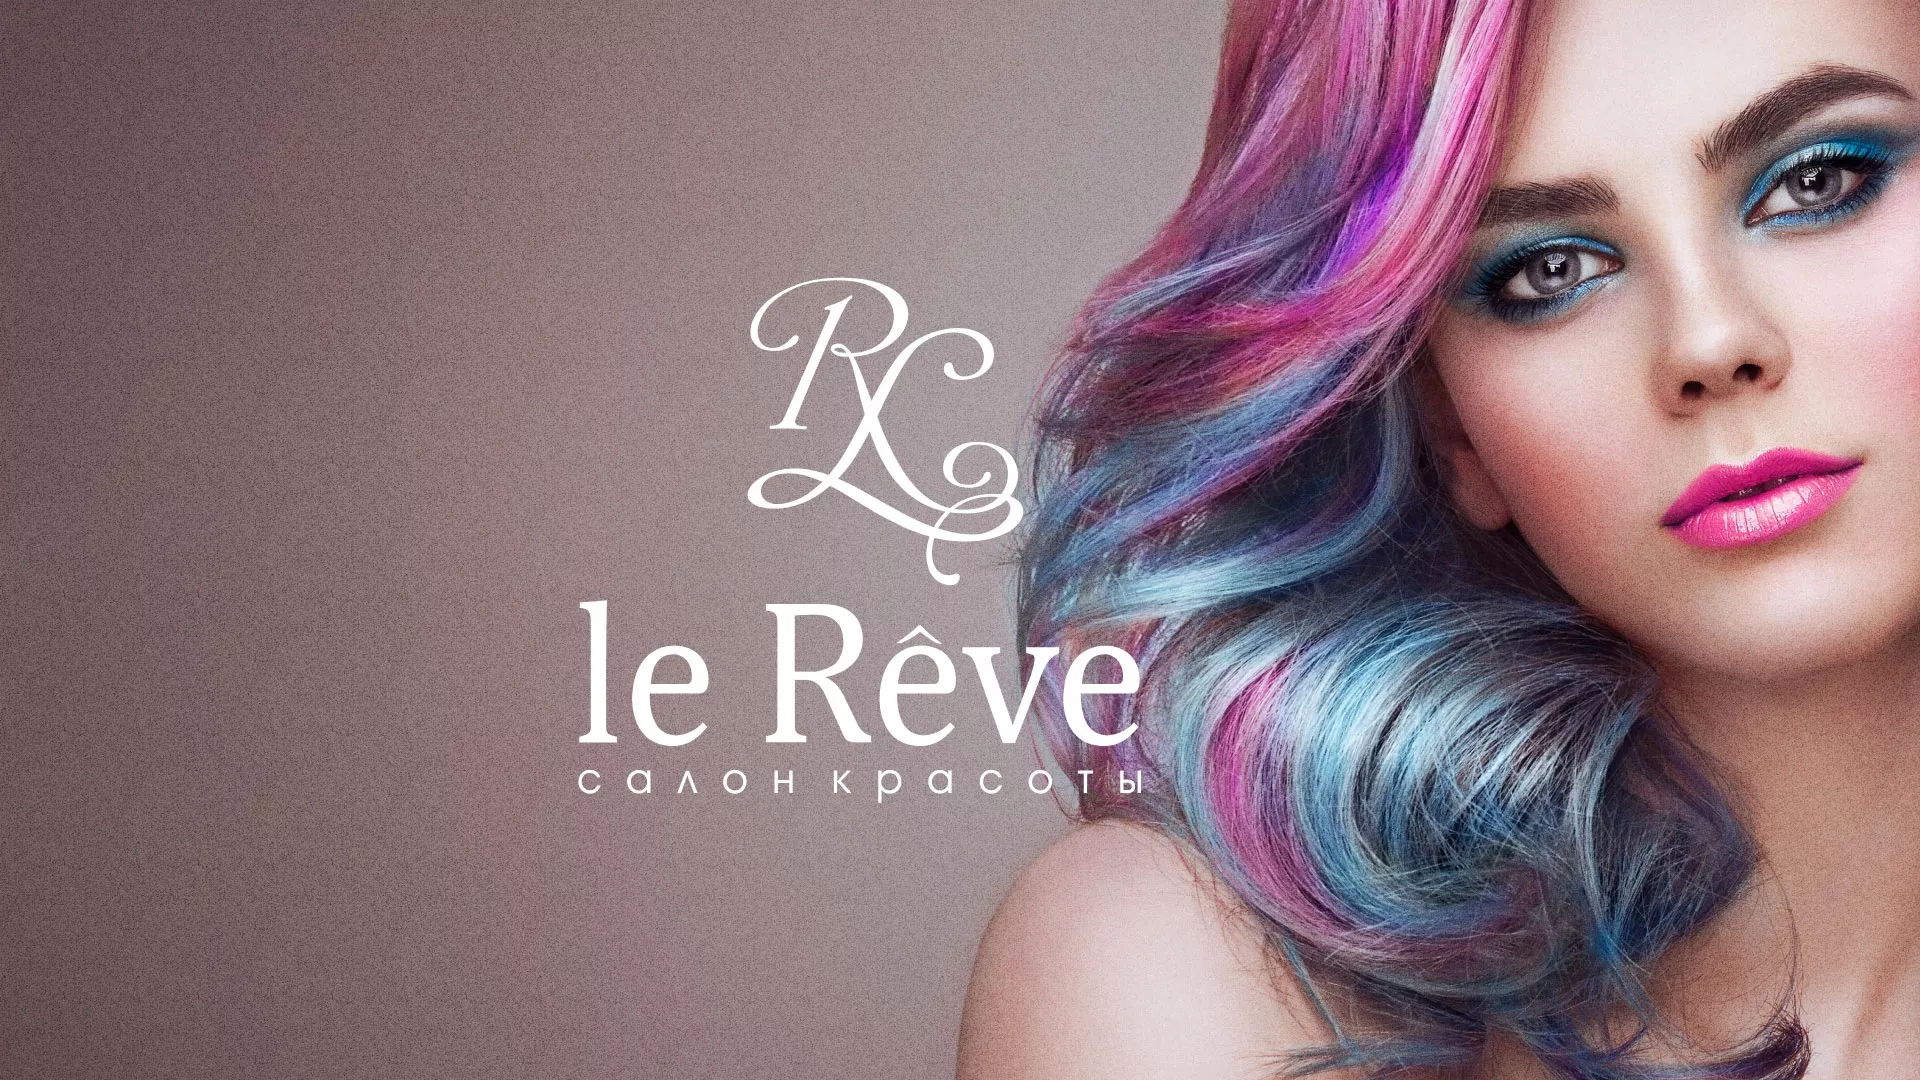 Создание сайта для салона красоты «Le Reve» в Симе